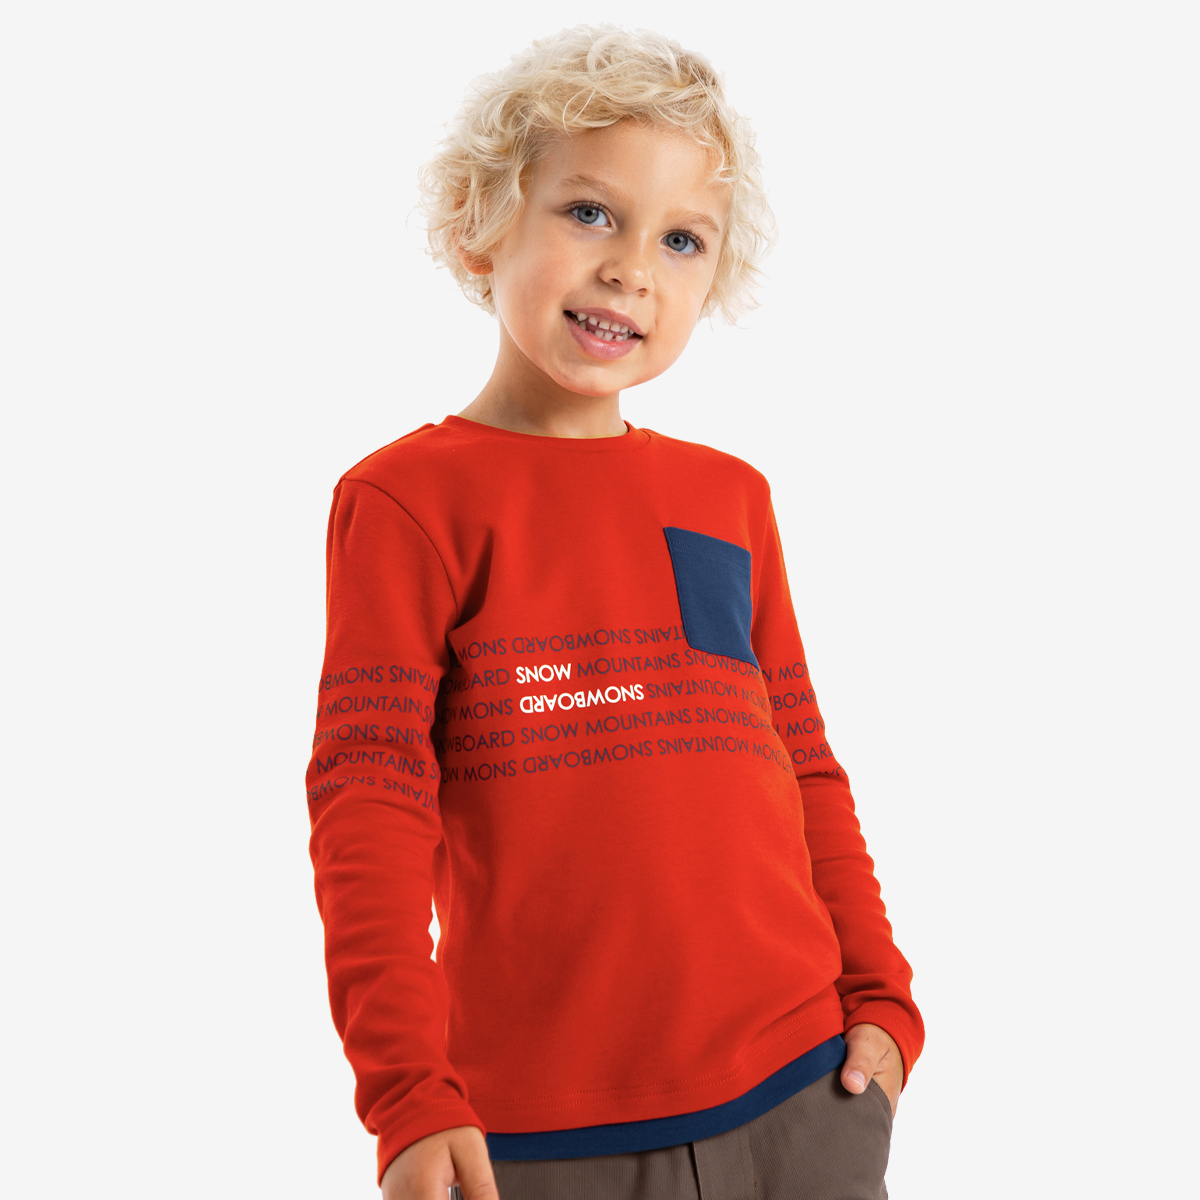 Лонгслив детский Kapika IKBCL01-R2, цвет красный, размер 116 лонгслив детский gloria jeans bkt012680 разно ный белый 128